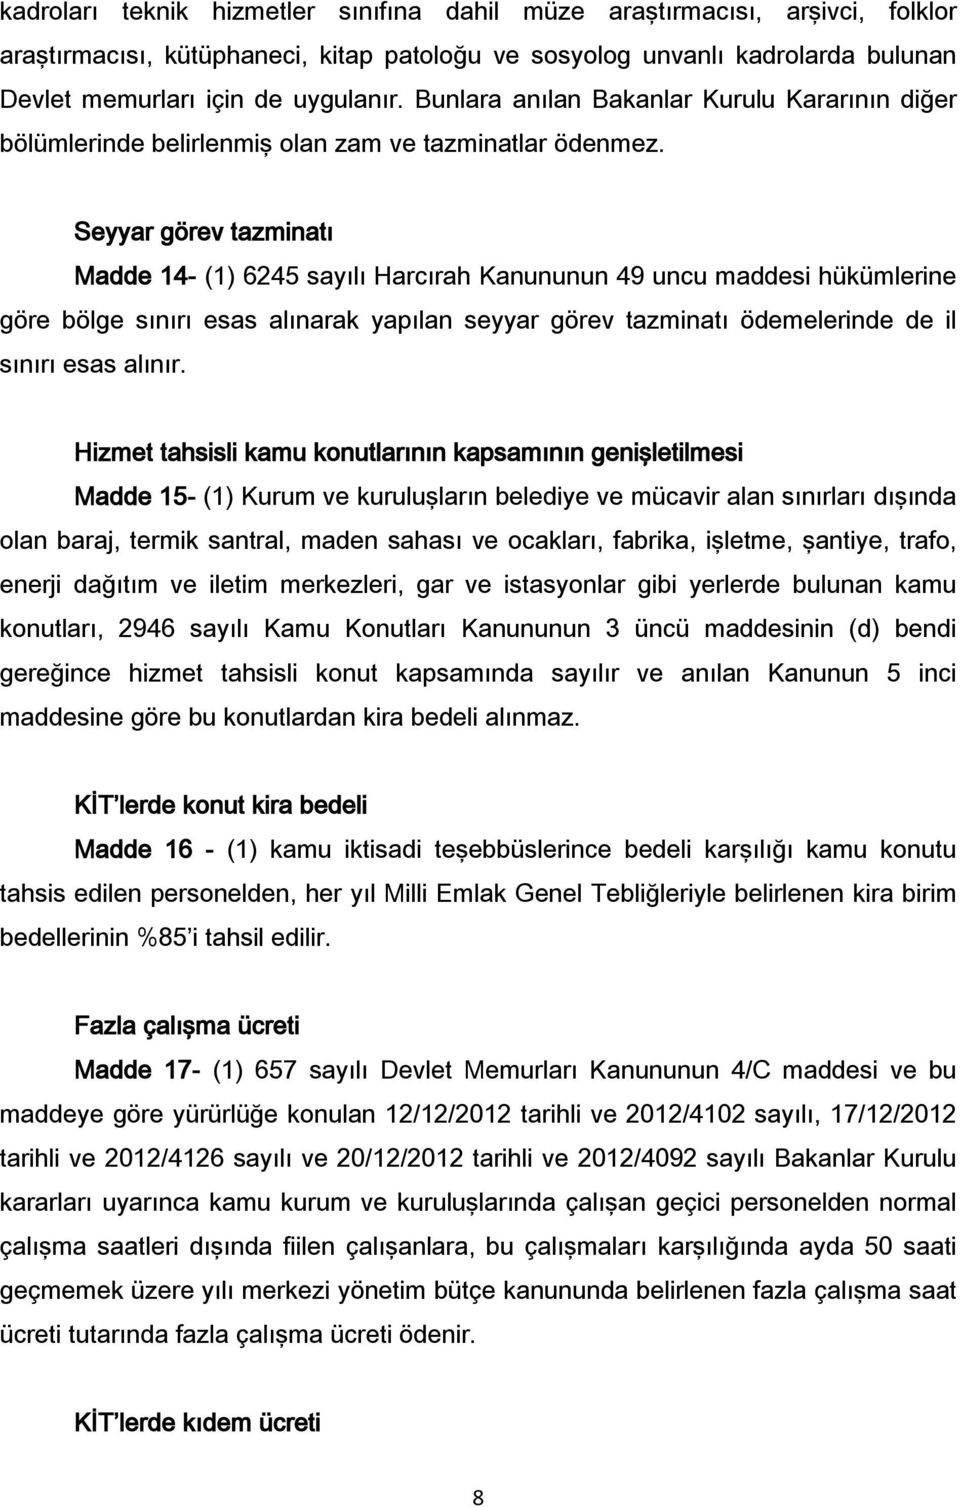 Seyyar görev tazminatı Madde 14- (1) 6245 sayılı Harcırah Kanununun 49 uncu maddesi hükümlerine göre bölge sınırı esas alınarak yapılan seyyar görev tazminatı ödemelerinde de il sınırı esas alınır.